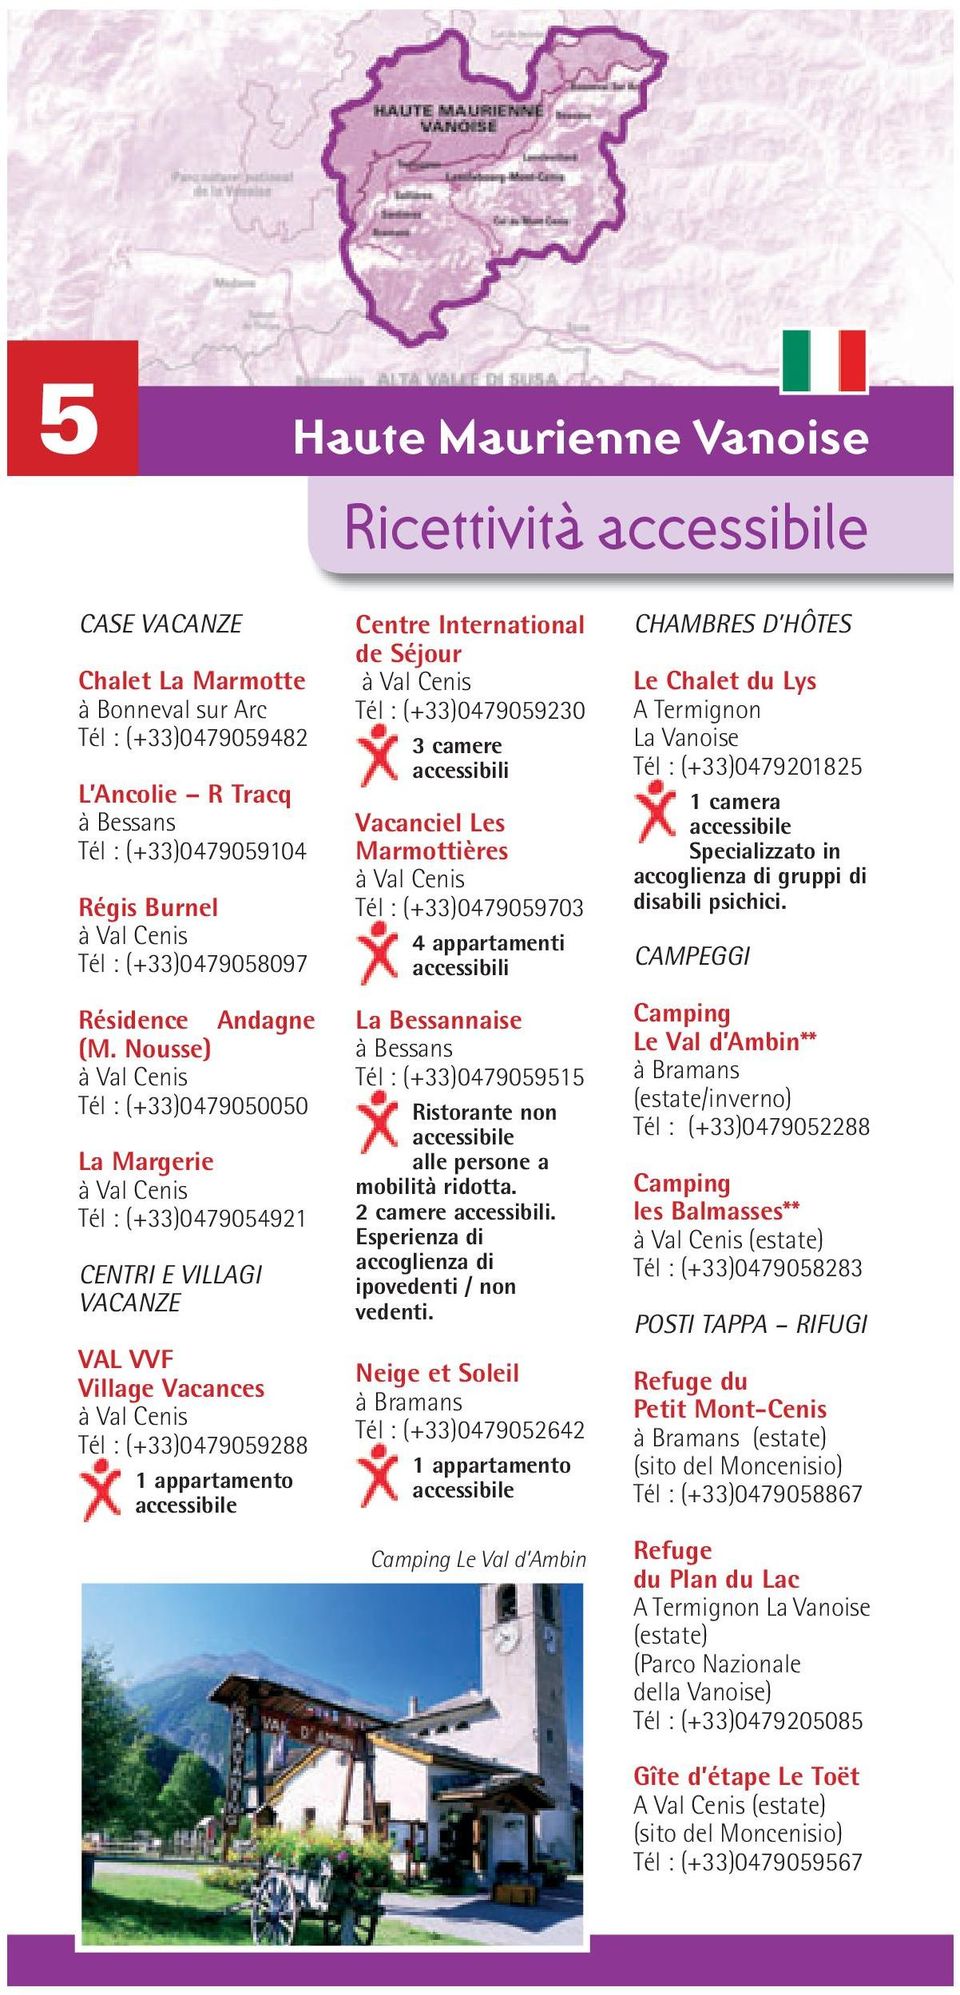 Vacanciel Les Marmottières Tél : (+33)0479059703 4 appartamenti La Bessannaise Tél : (+33)0479059515 Ristorante non alle persone a mobilità ridotta. 2 camere.